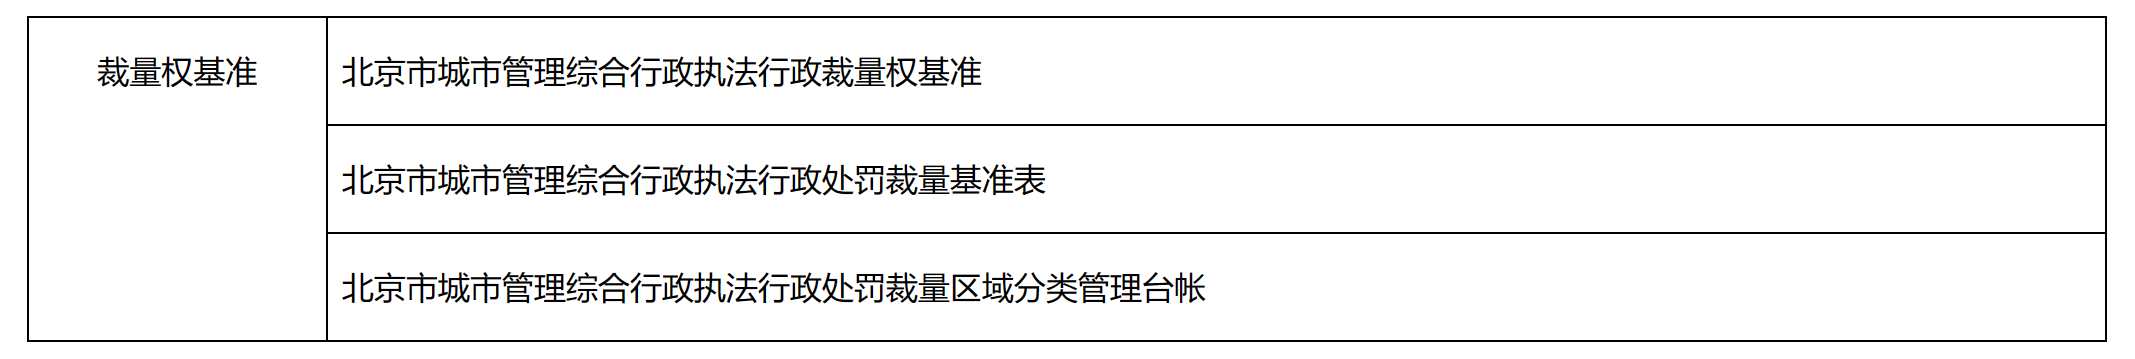 北京市城市管理綜合行政執法行政裁量權基準